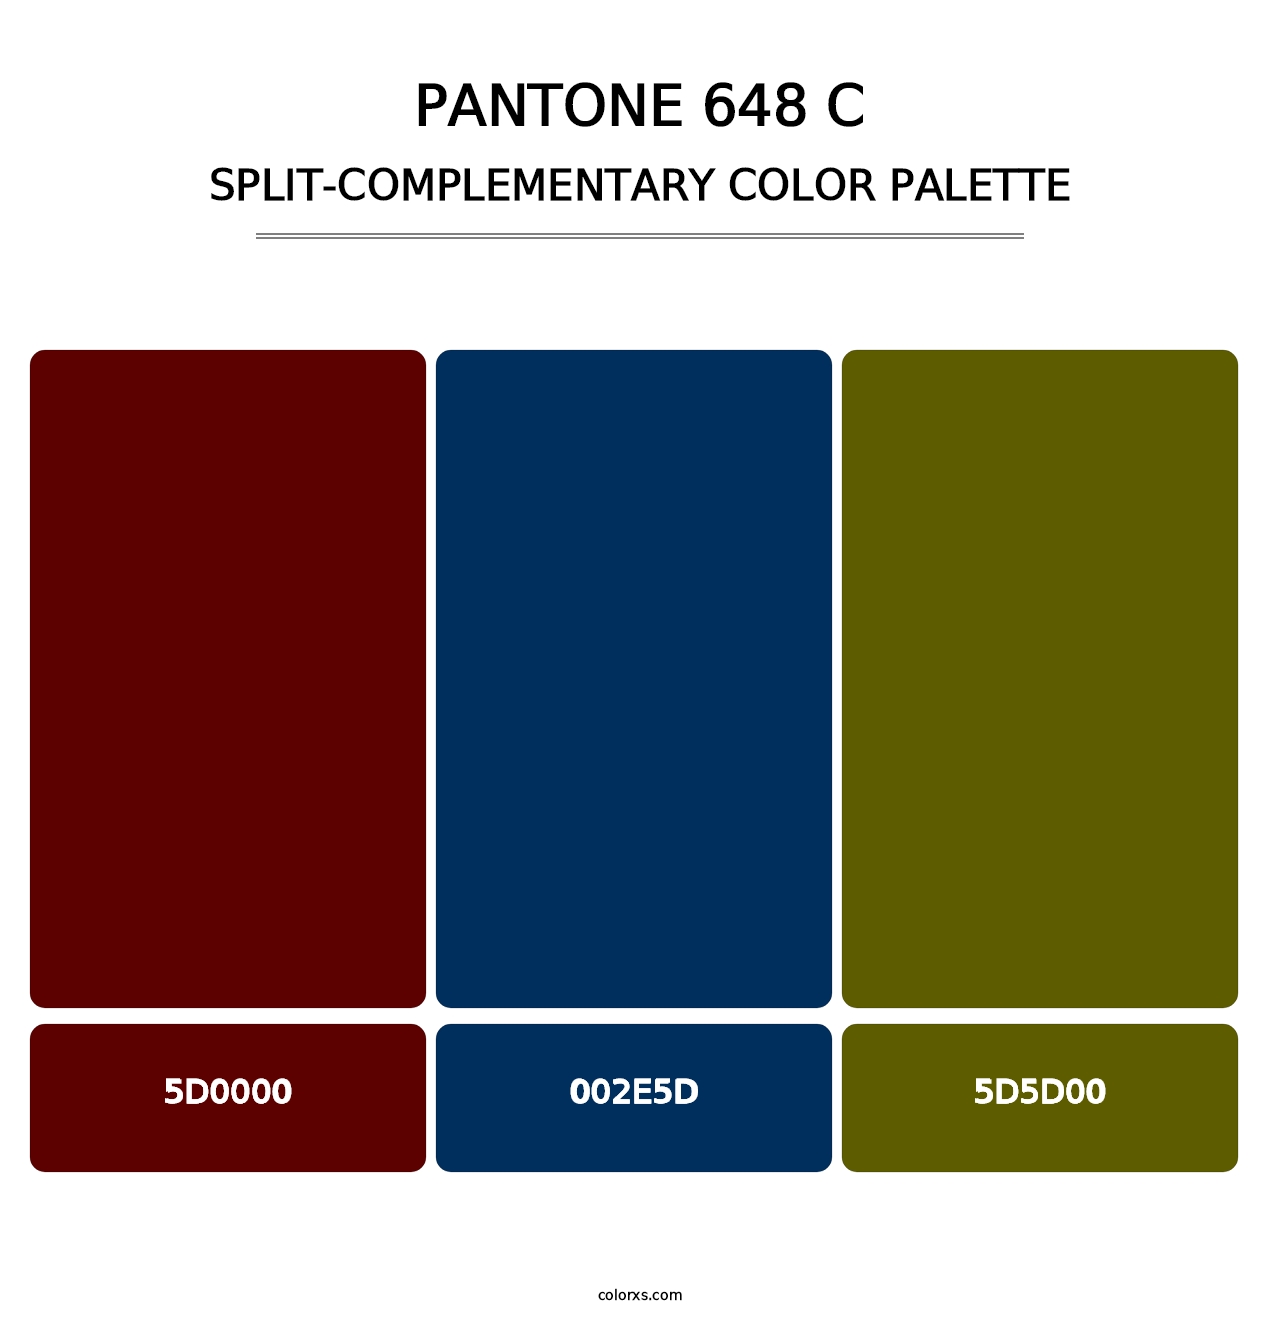 PANTONE 648 C - Split-Complementary Color Palette